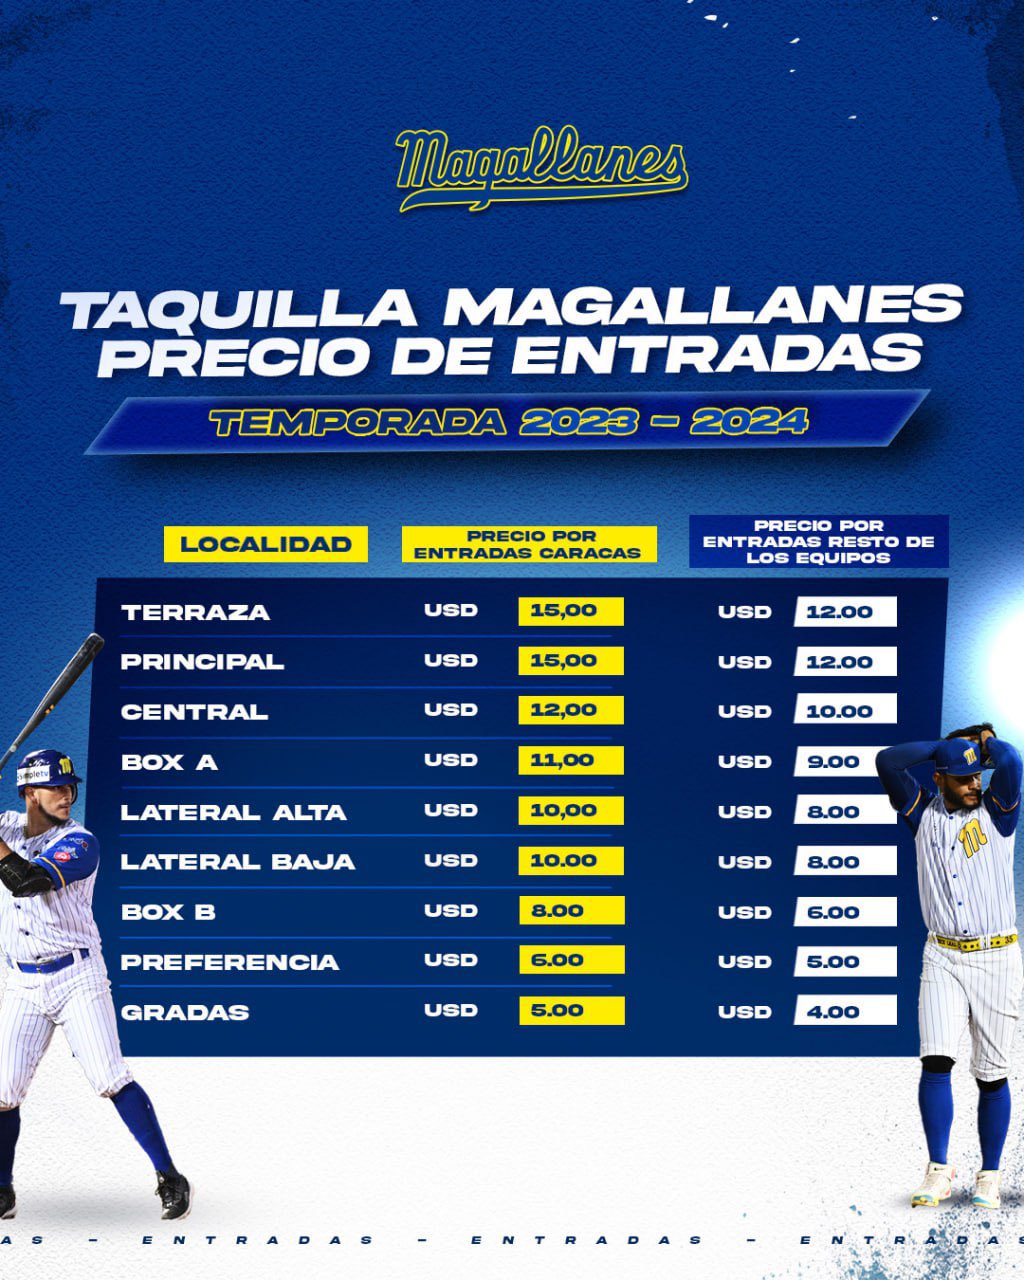 Precio de las entradas a los juegos de Magallanes - Precio de las entradas a los juegos de Magallanes